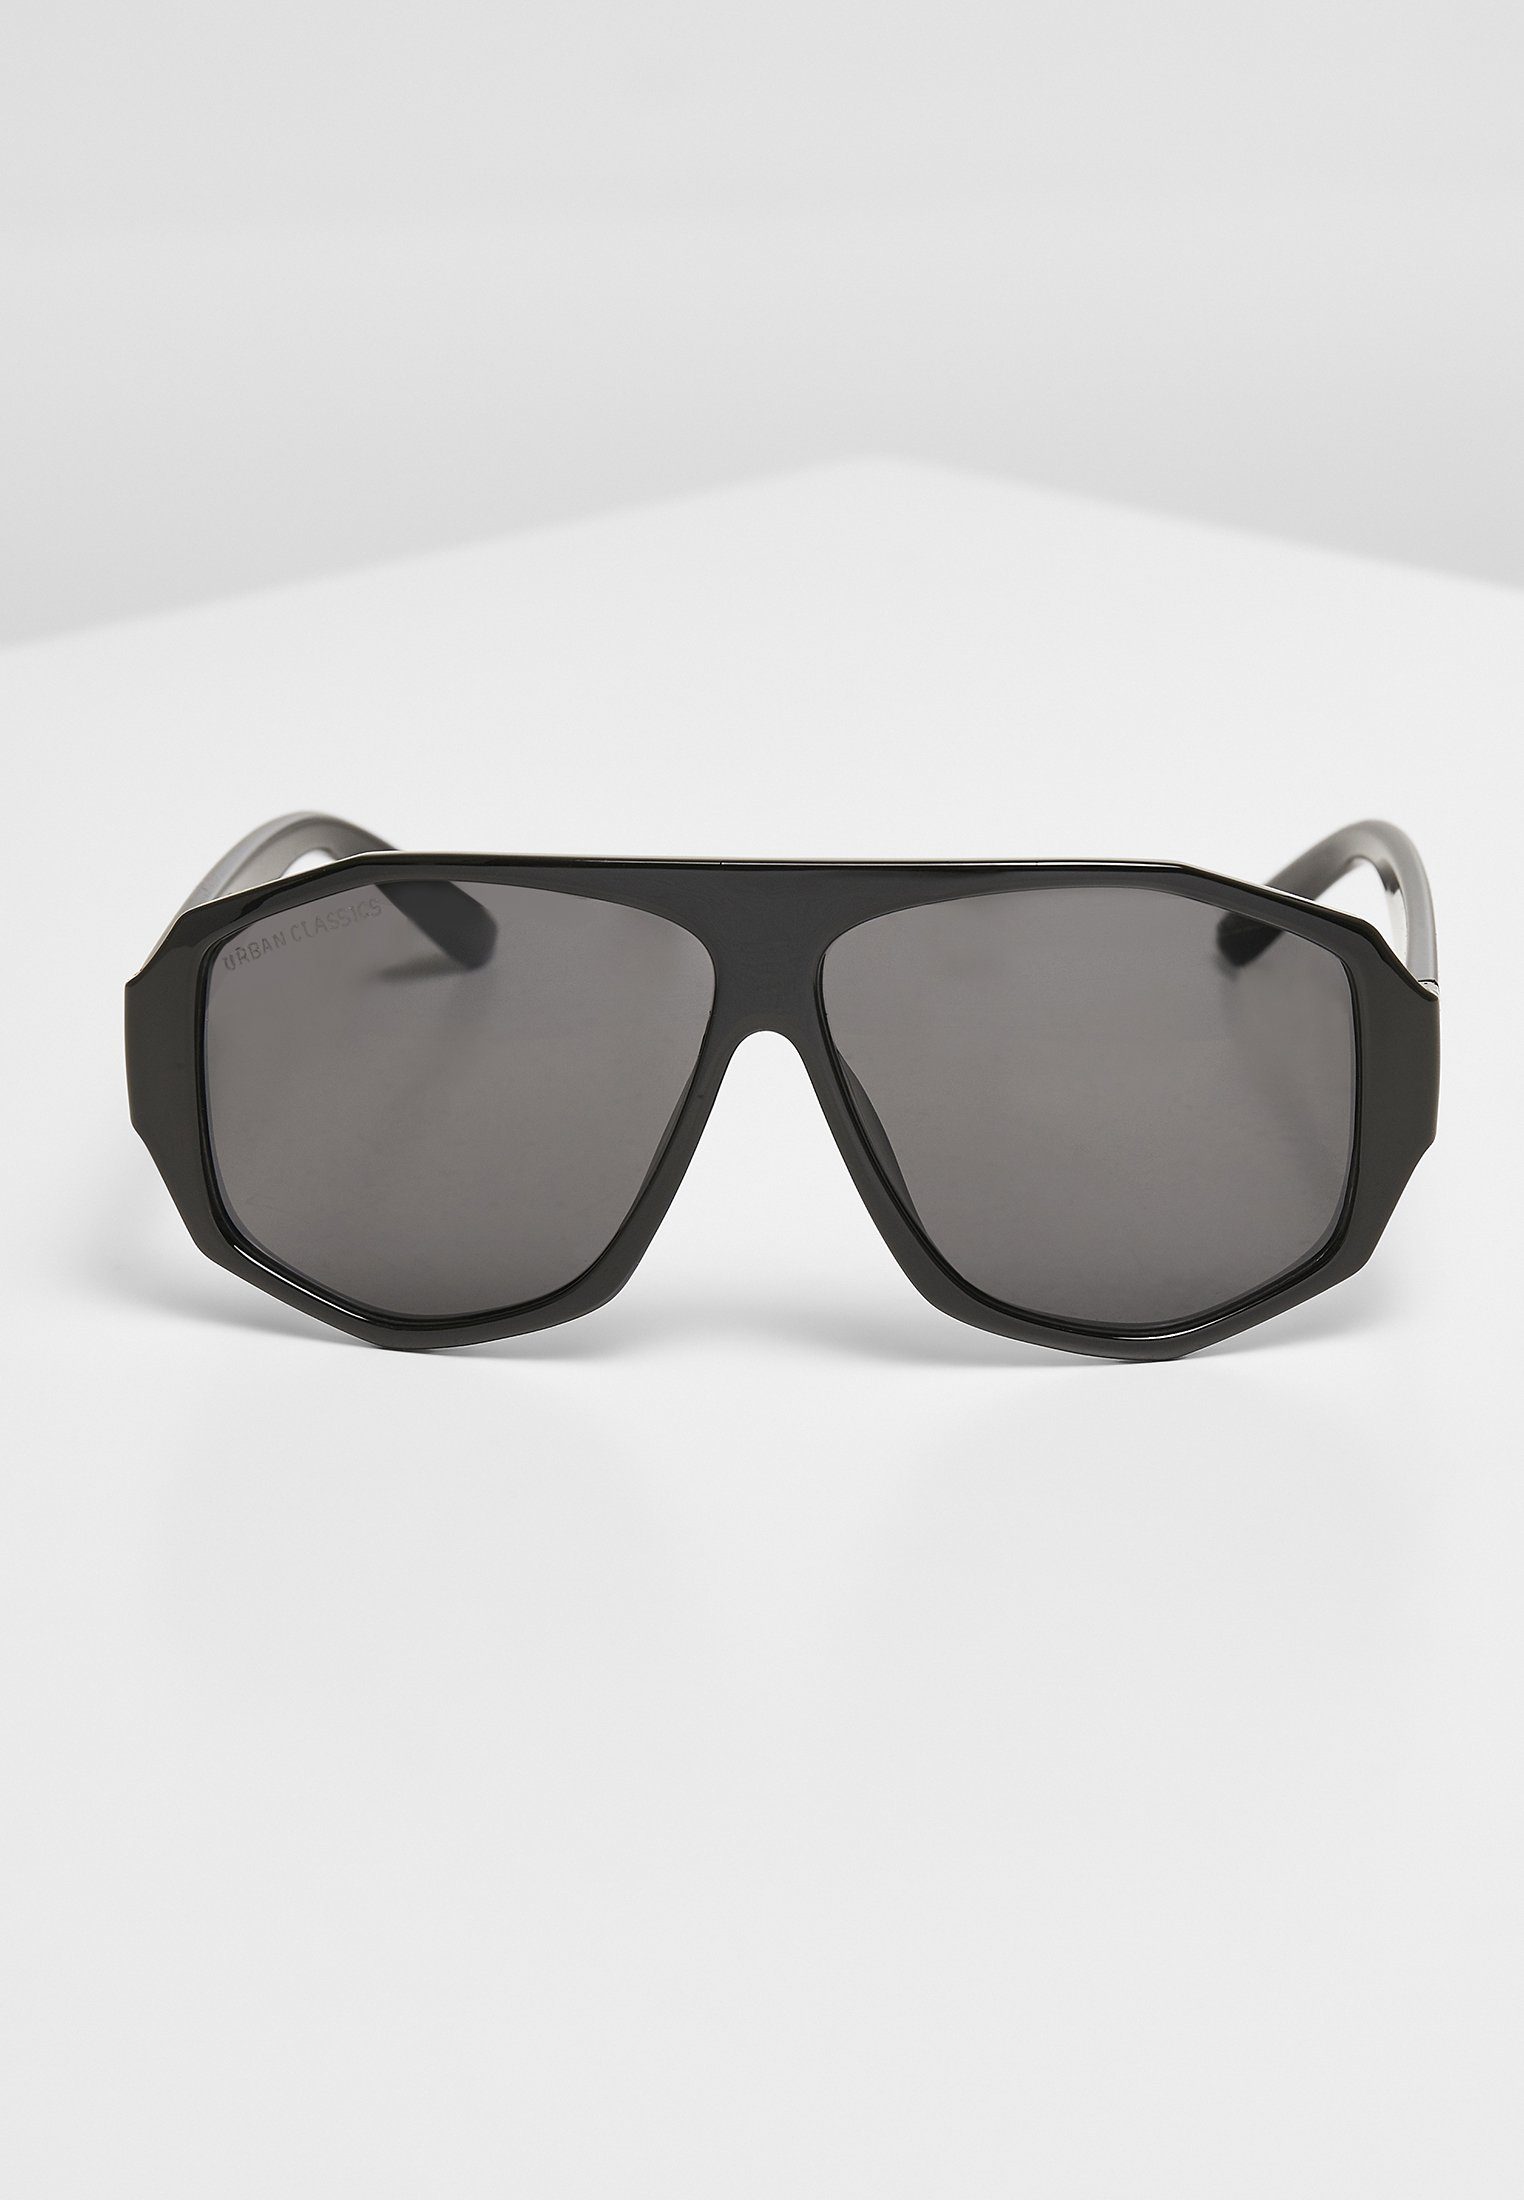 URBAN CLASSICS Sunglasses UC Sonnenbrille black/black Accessoires 101